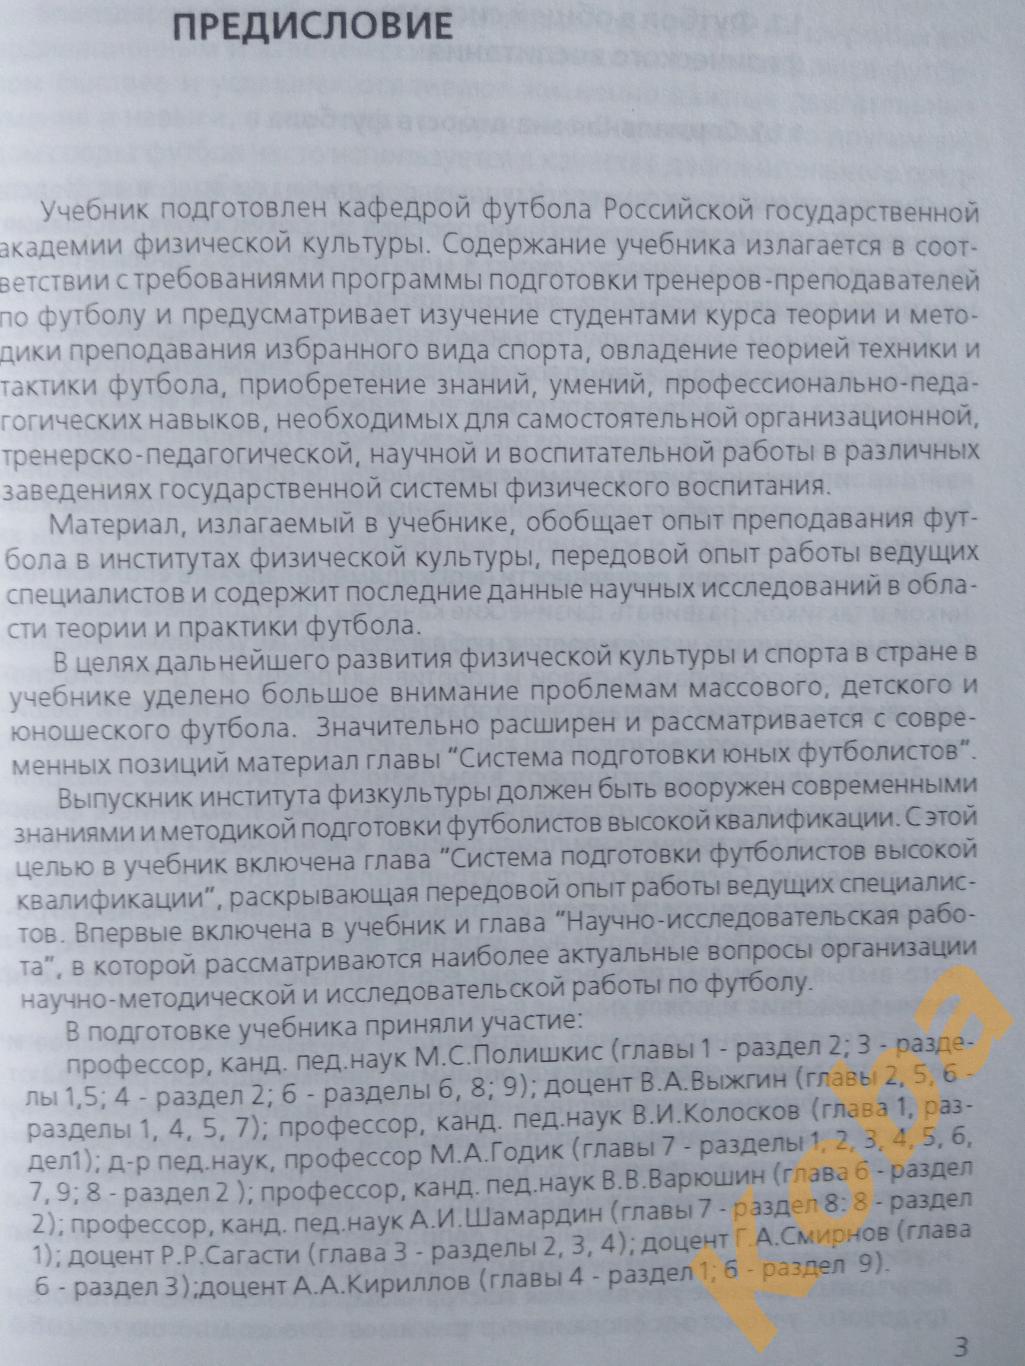 Футбол учебник для институтов физической культуры Полишкис Выжгин 1999 3